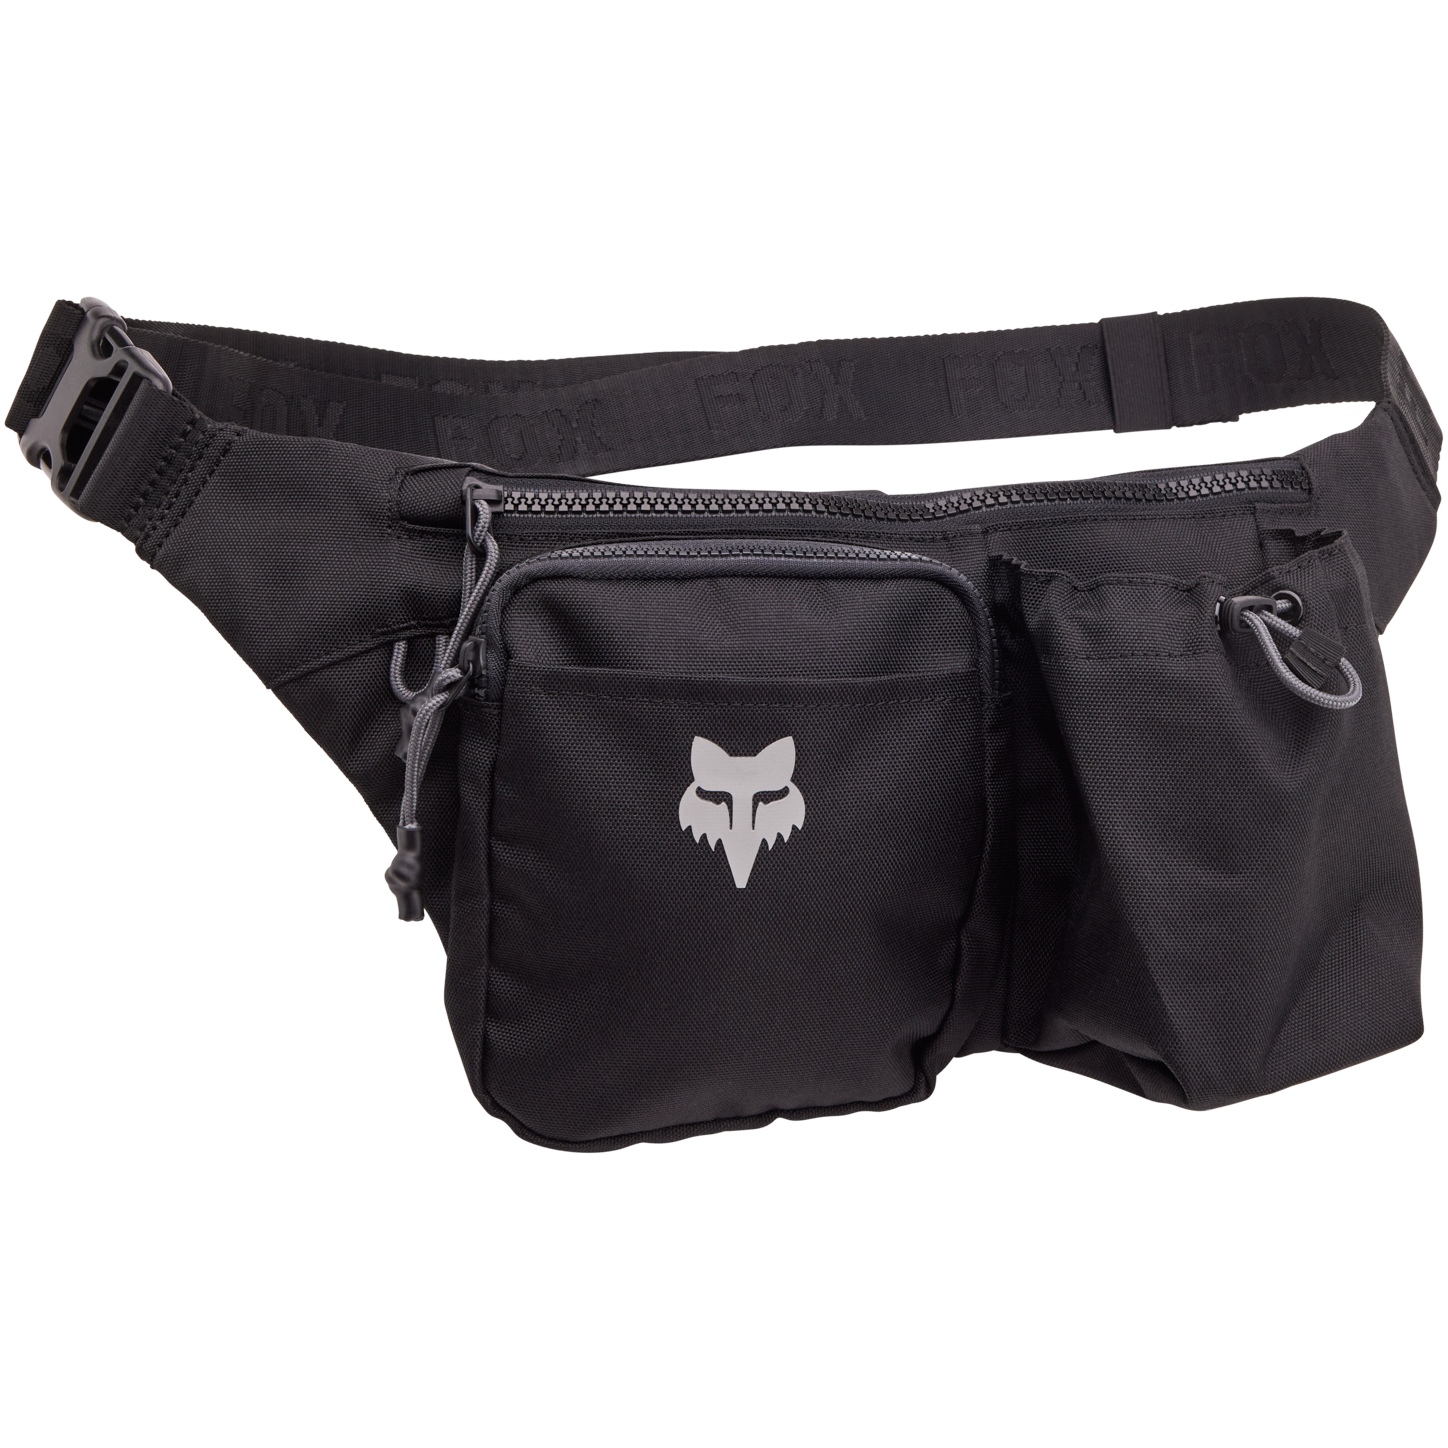 Produktbild von FOX Head Premium Hüfttasche - schwarz